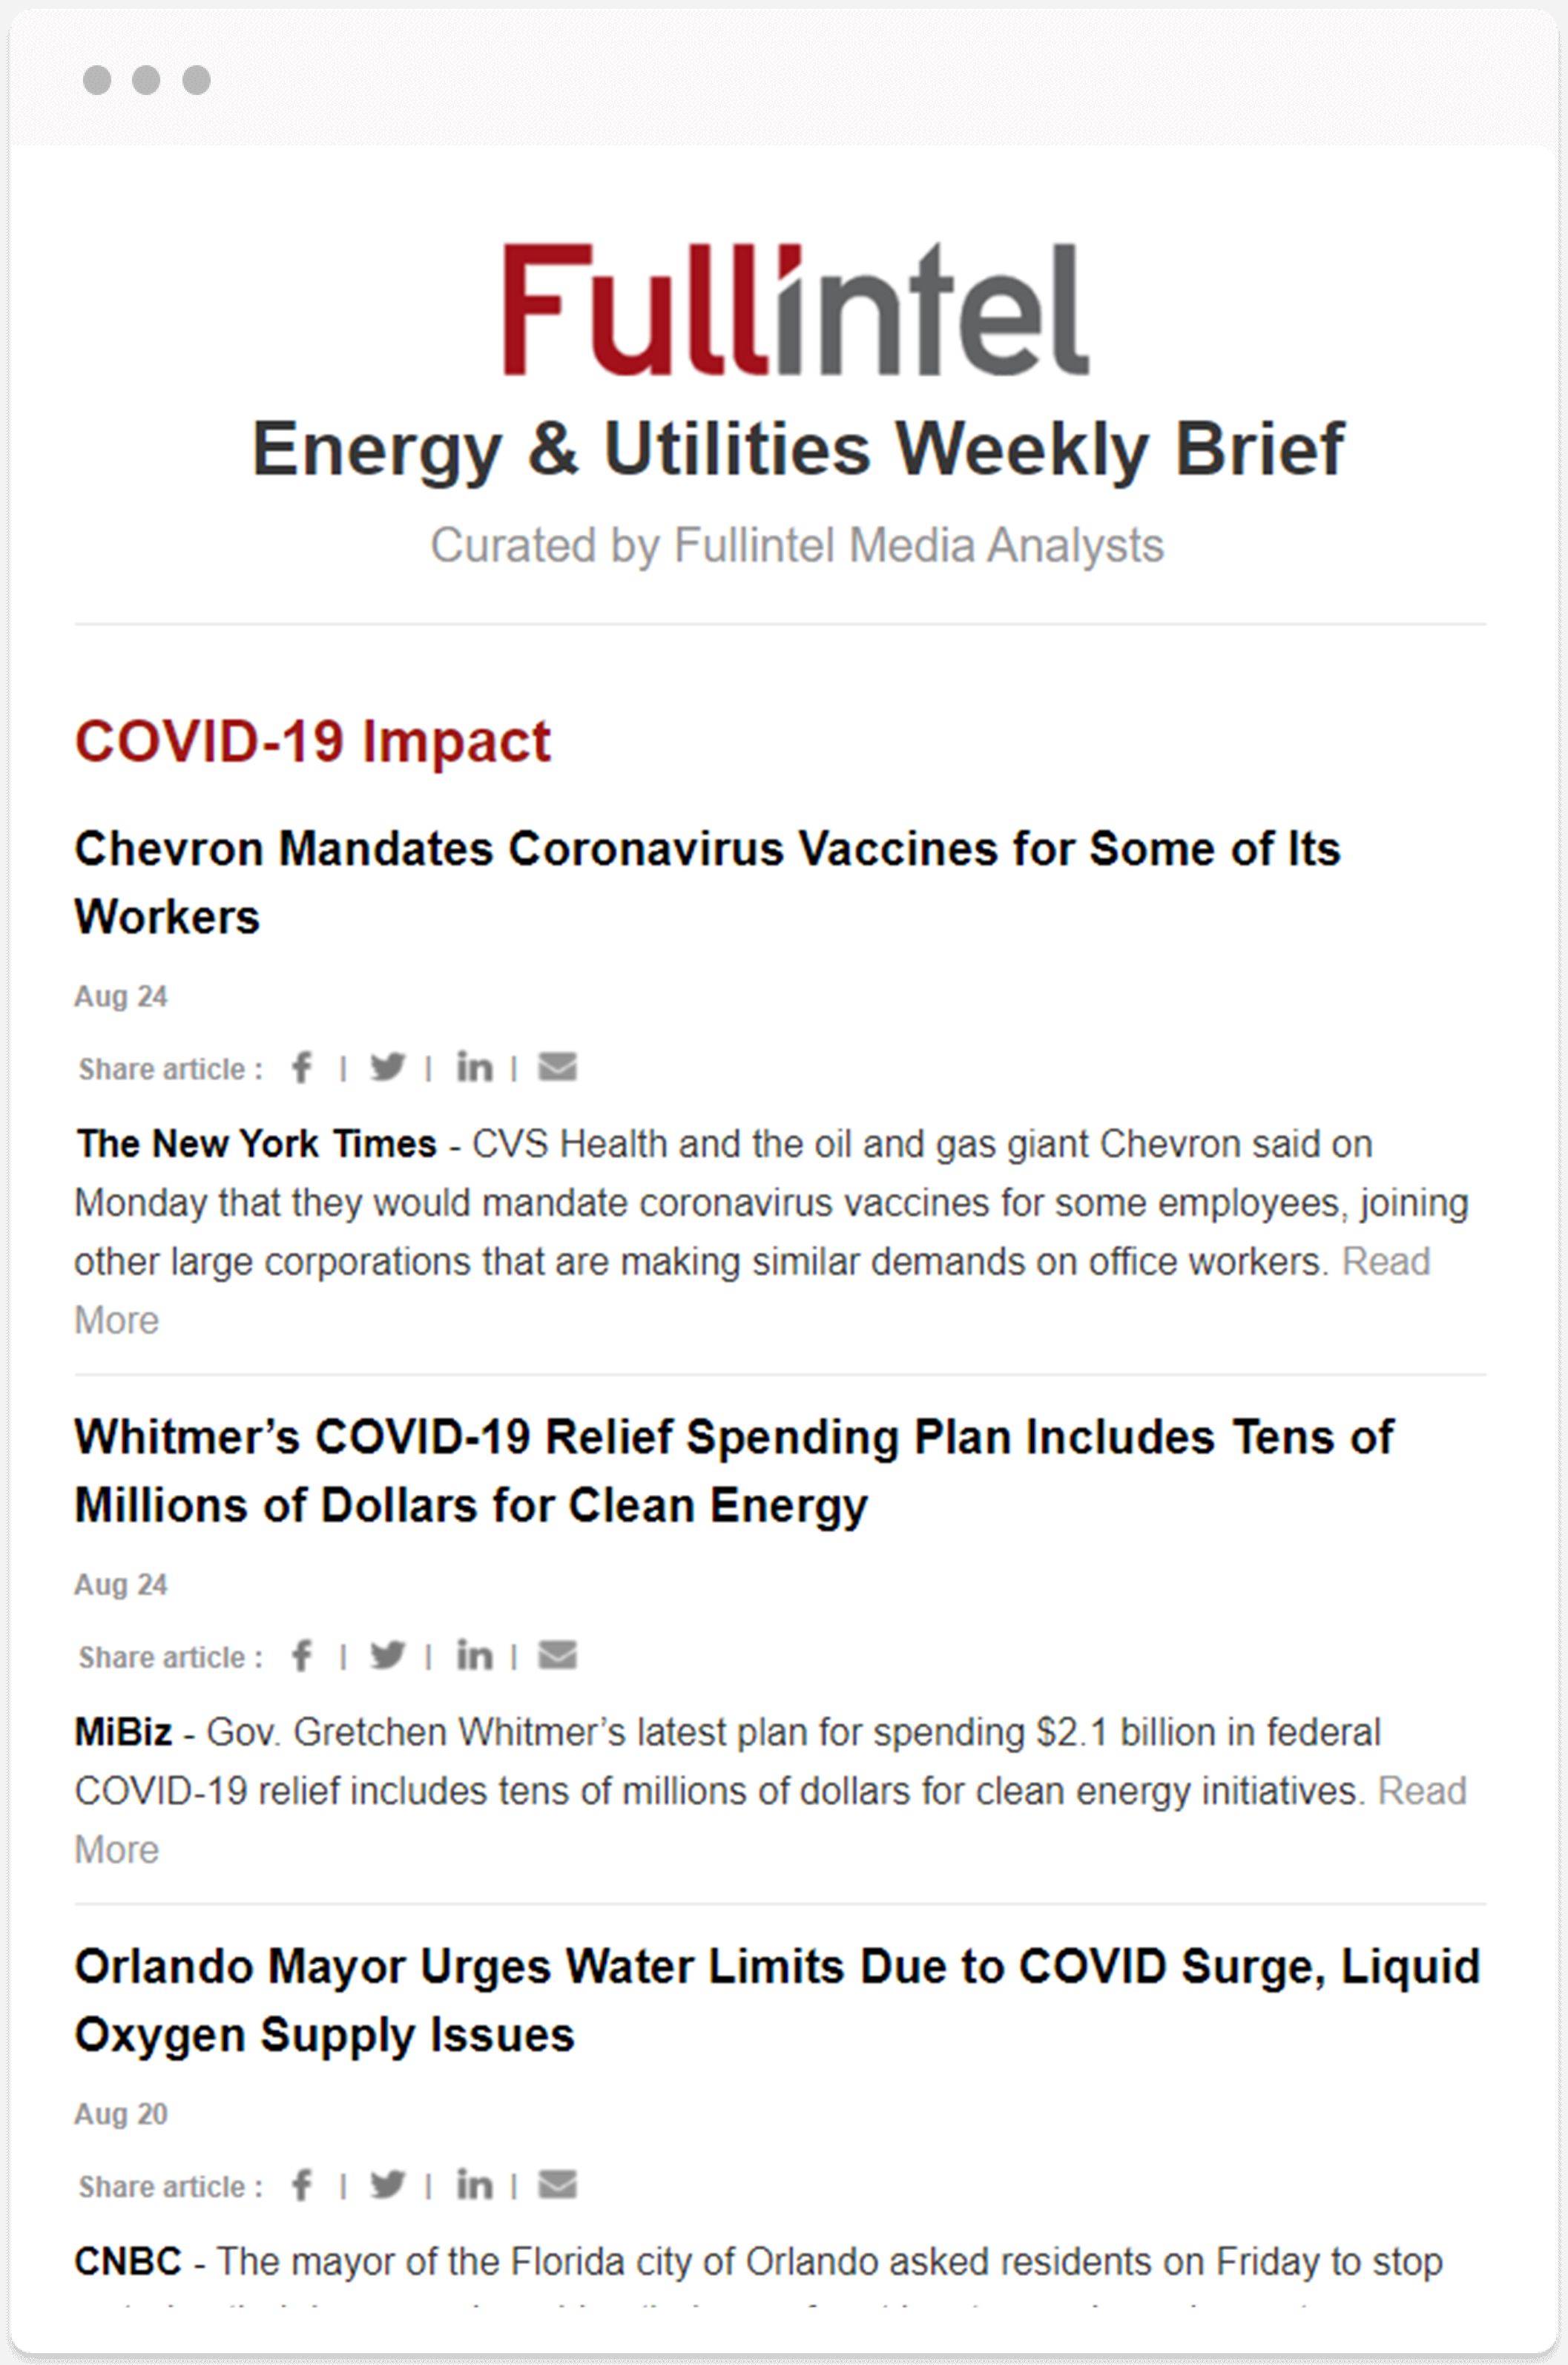 Energy &Utilities Weekly Brief